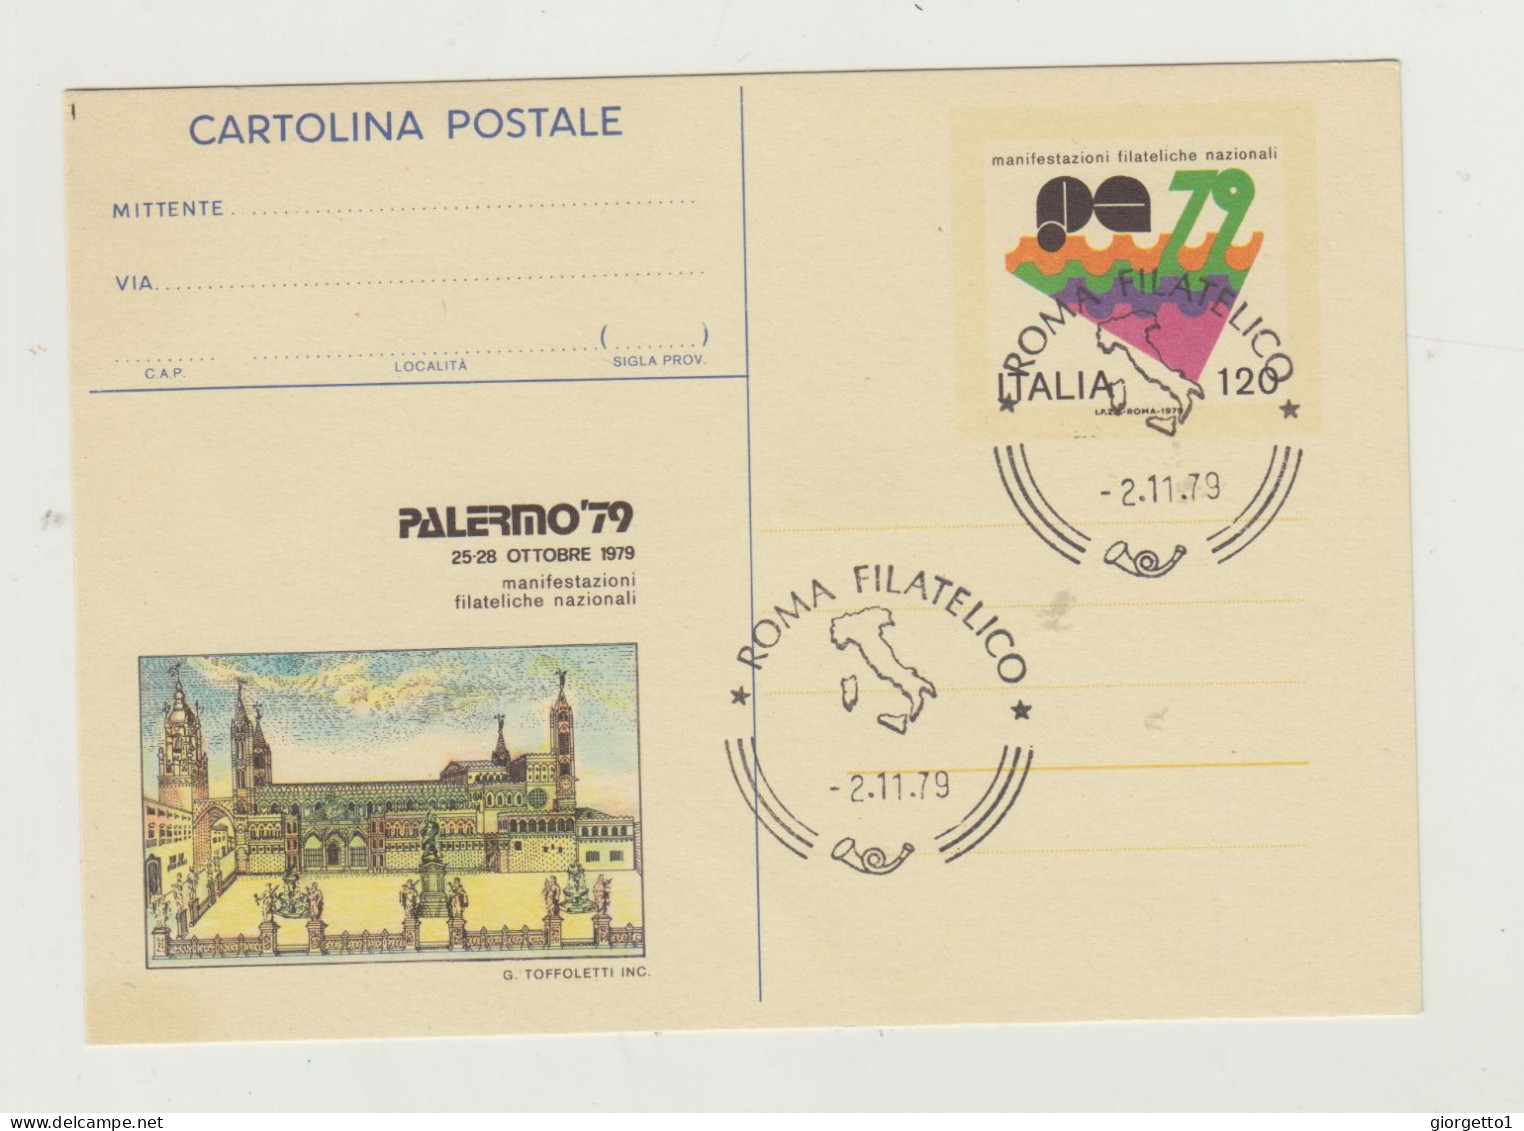 CARTOLINA POSTALE MANIFESTAZIONI FILATELICHE POSTALI - PALERMO 79 - ANNULLO ROMA FILATELICO 2-11-1979 - Marcofilie